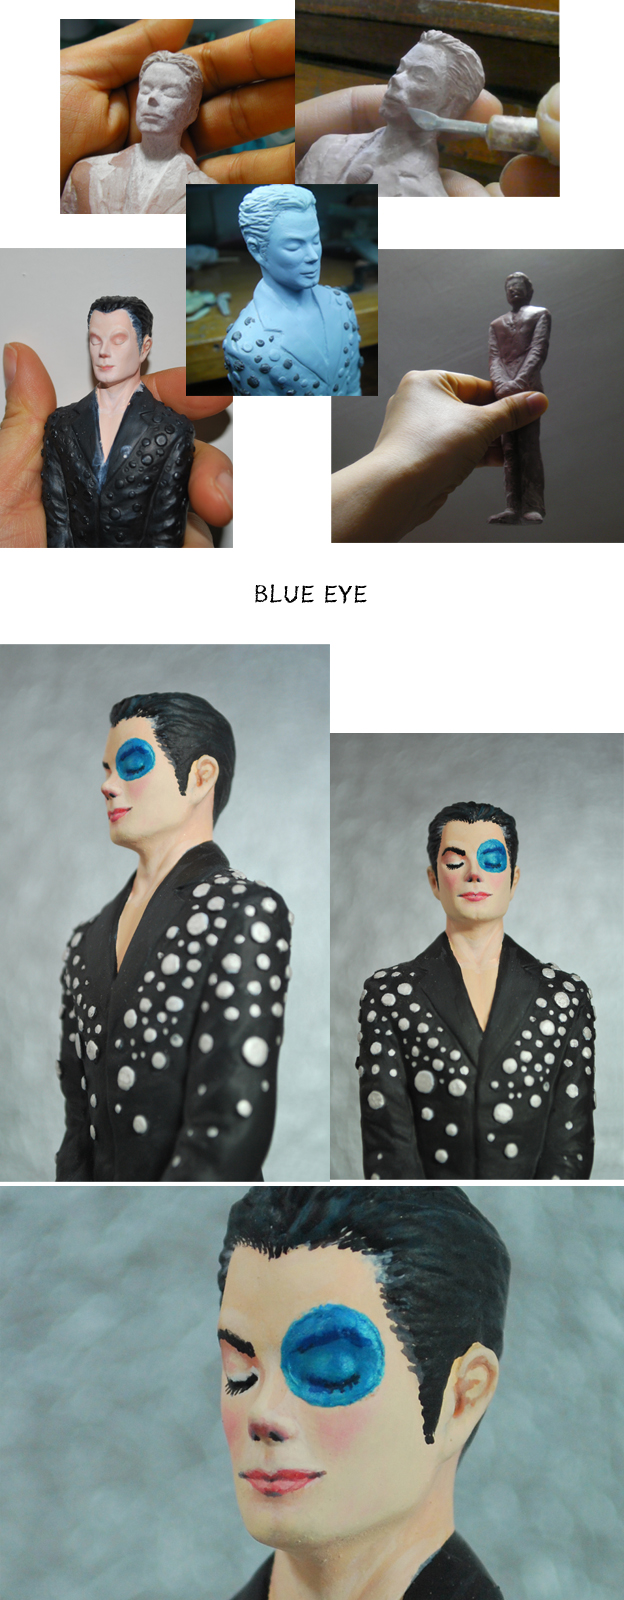 BLUE EYE - Michael Jackson7